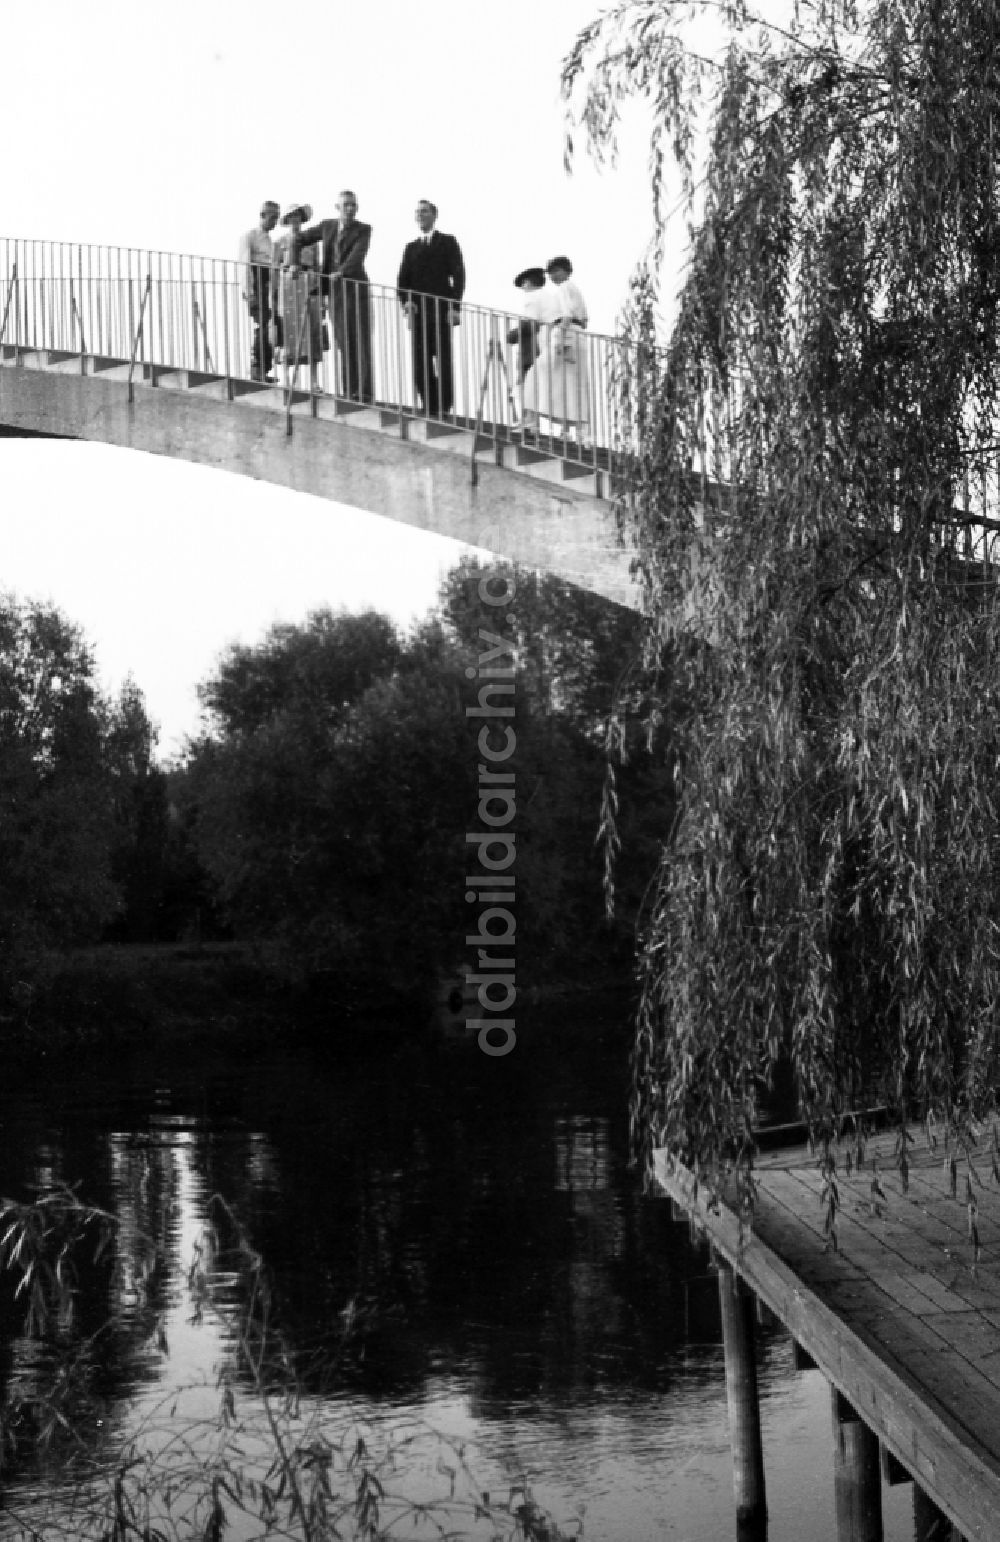 DDR-Fotoarchiv: Leuna - Spaziergänger auf der Waldbadbrücke in Leuna in Sachsen-Anhalt in Deutschland